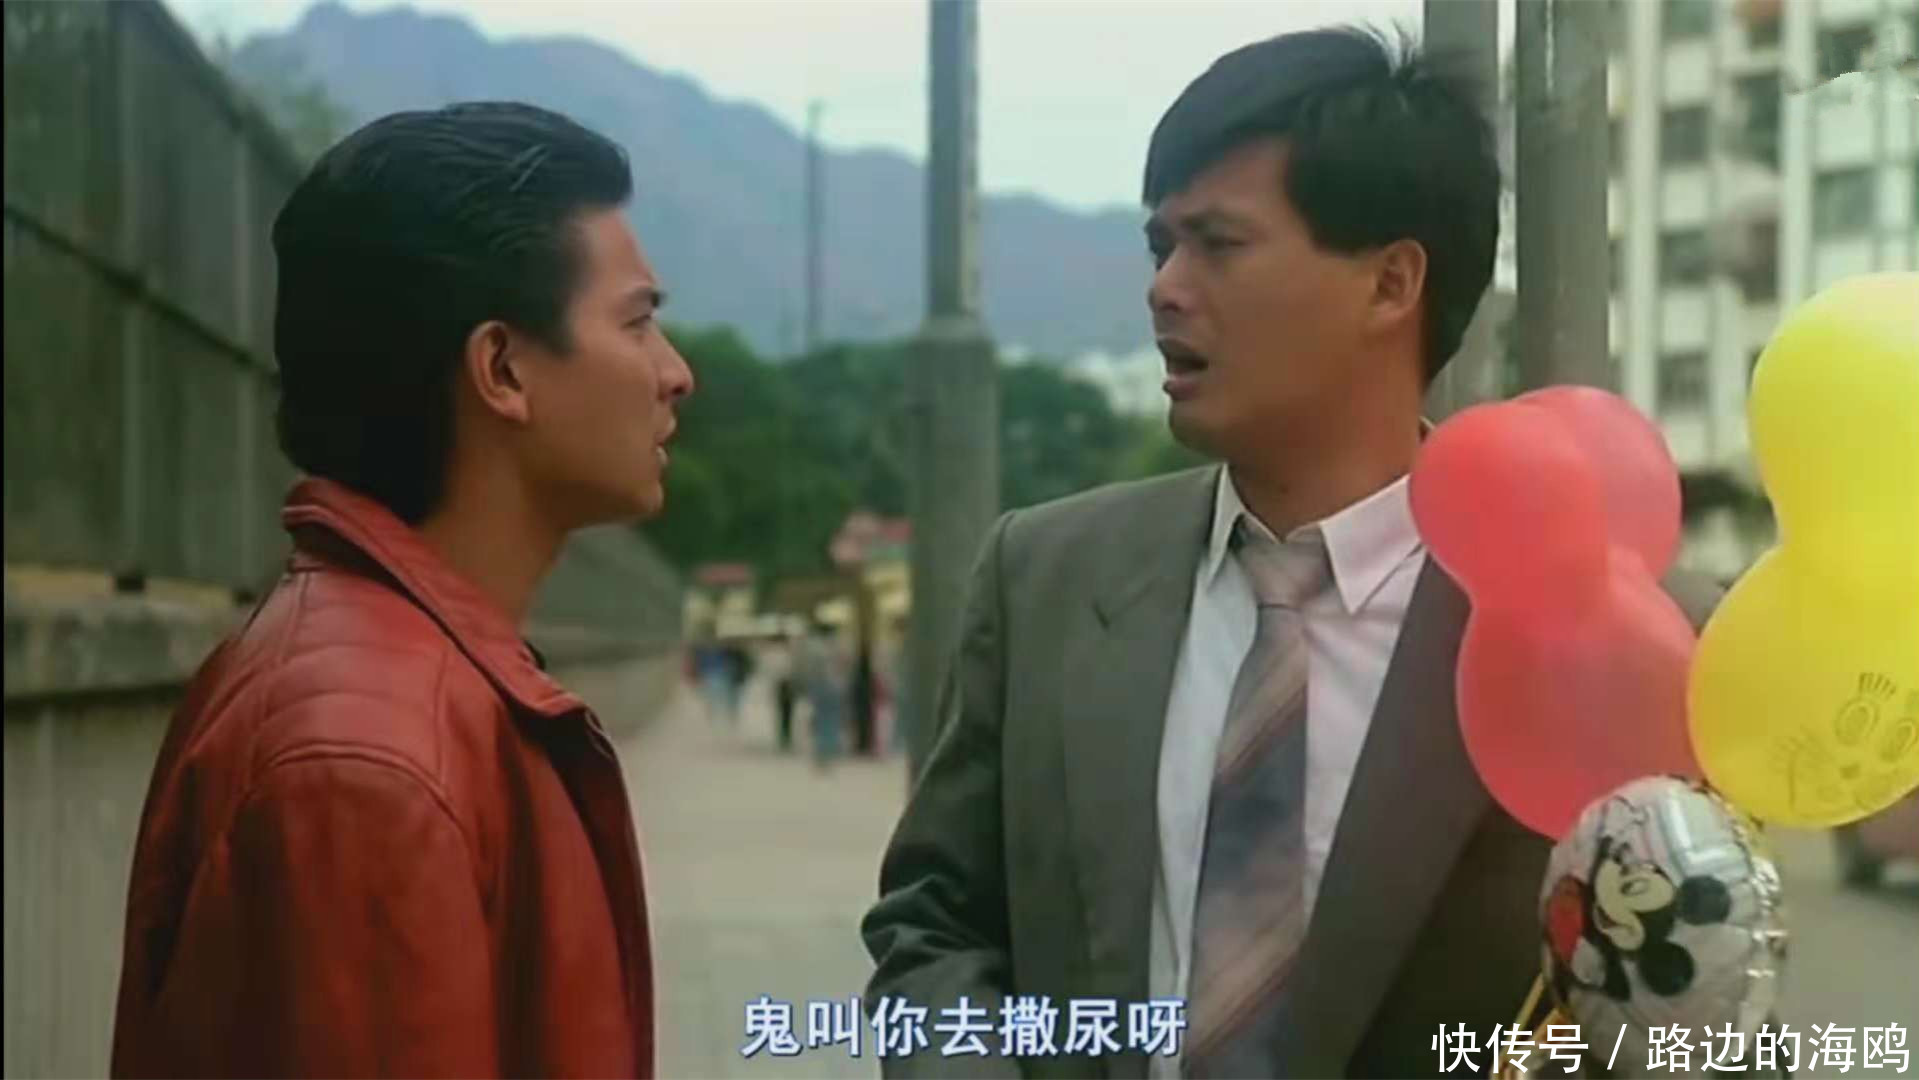 29年前这部电影周润发赌计高超,刘德华演小混